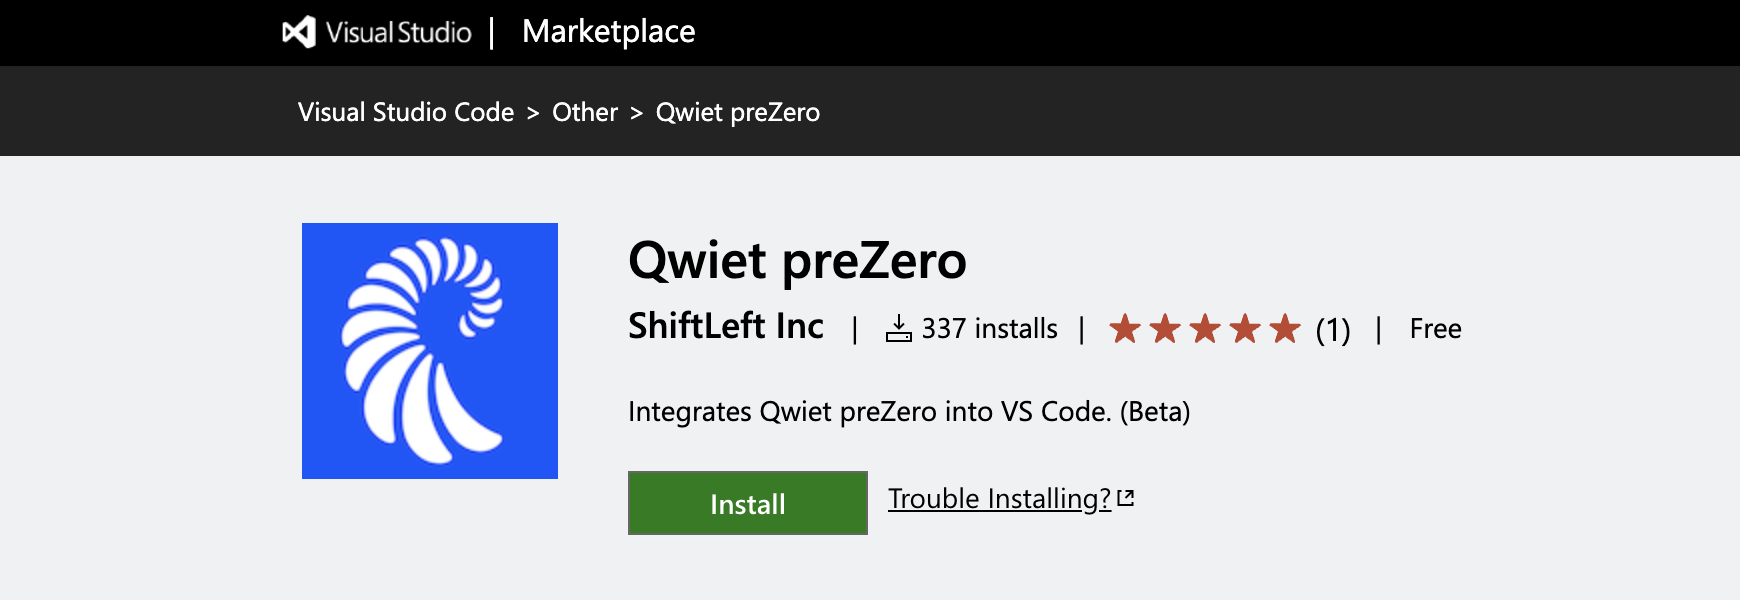 Qwiet preZero extension in the marketplace